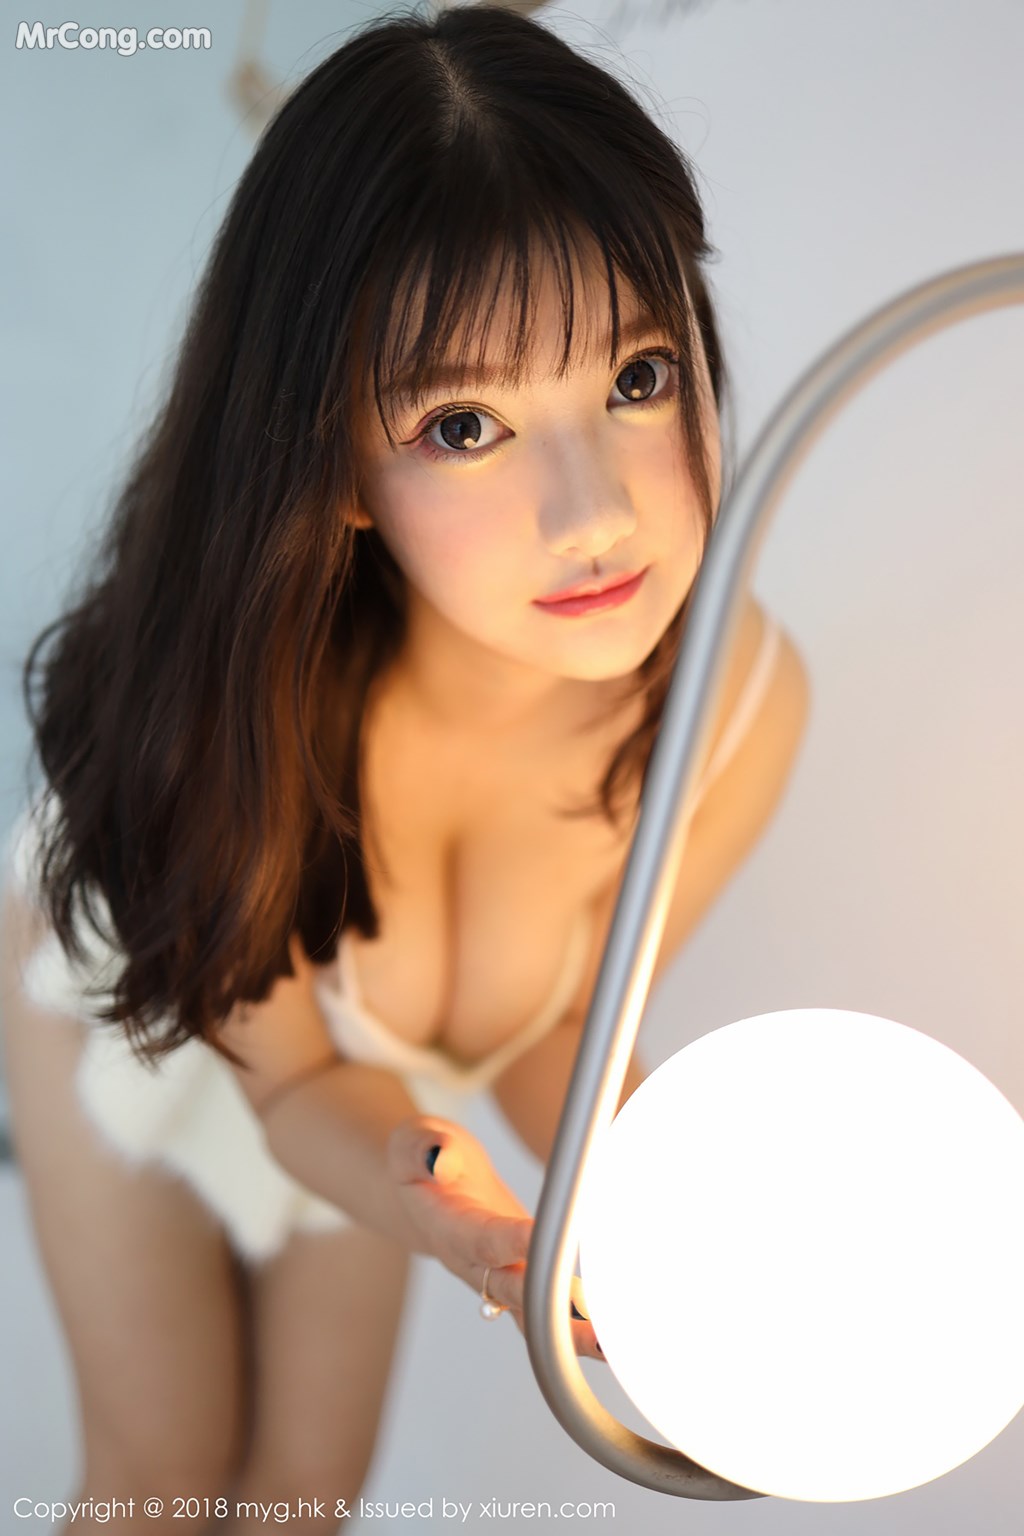 MyGirl Vol.338: Model Xiao You Nai (小 尤奈) (50 photos) photo 1-5